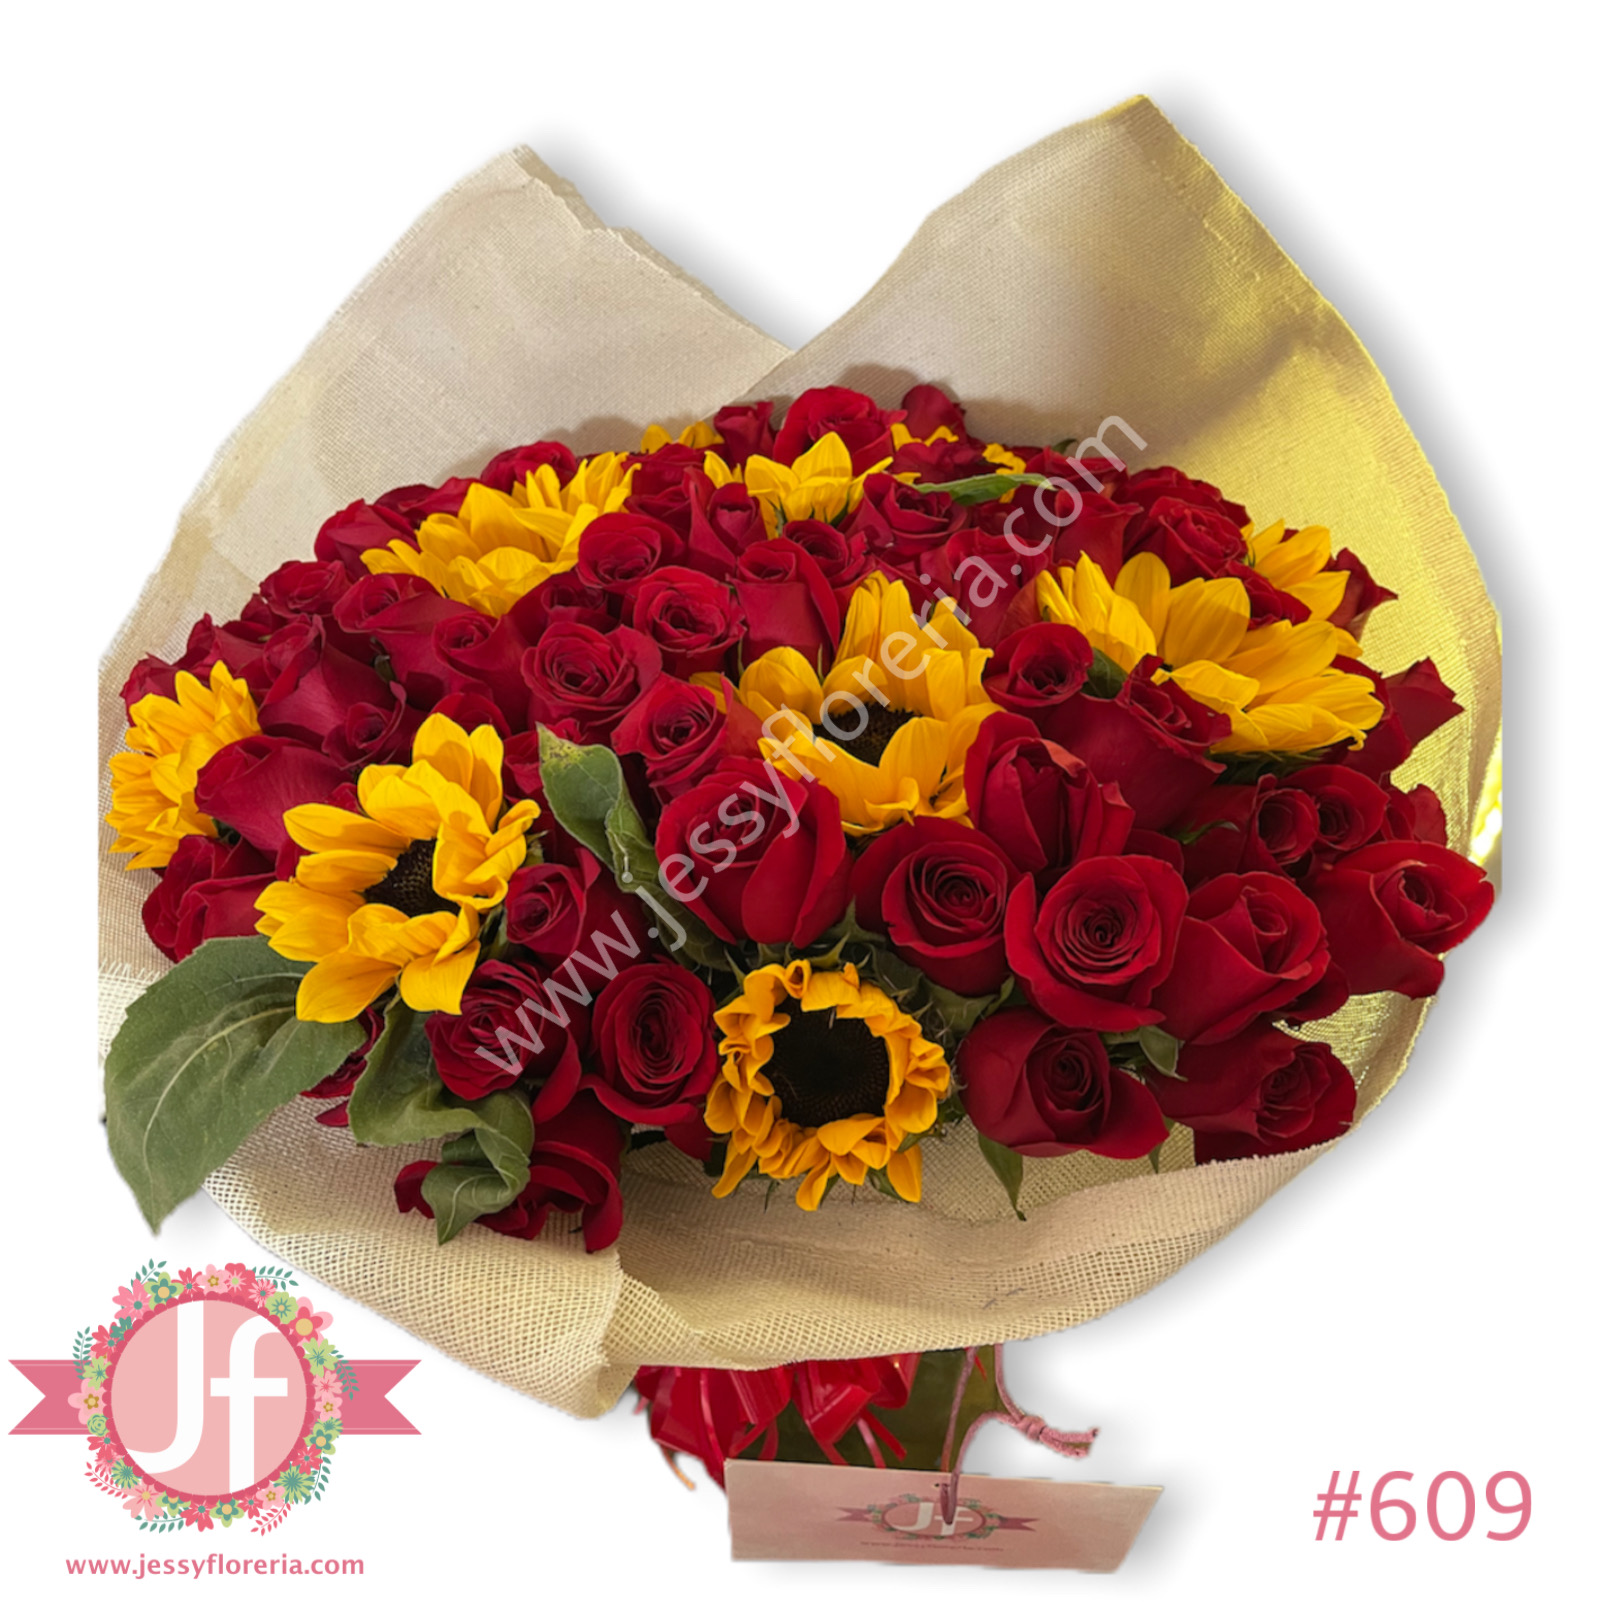 Ramo de 100 rosas y 10 girasoles - Envíos GRATIS Mismo día 2 a 4 Hrs